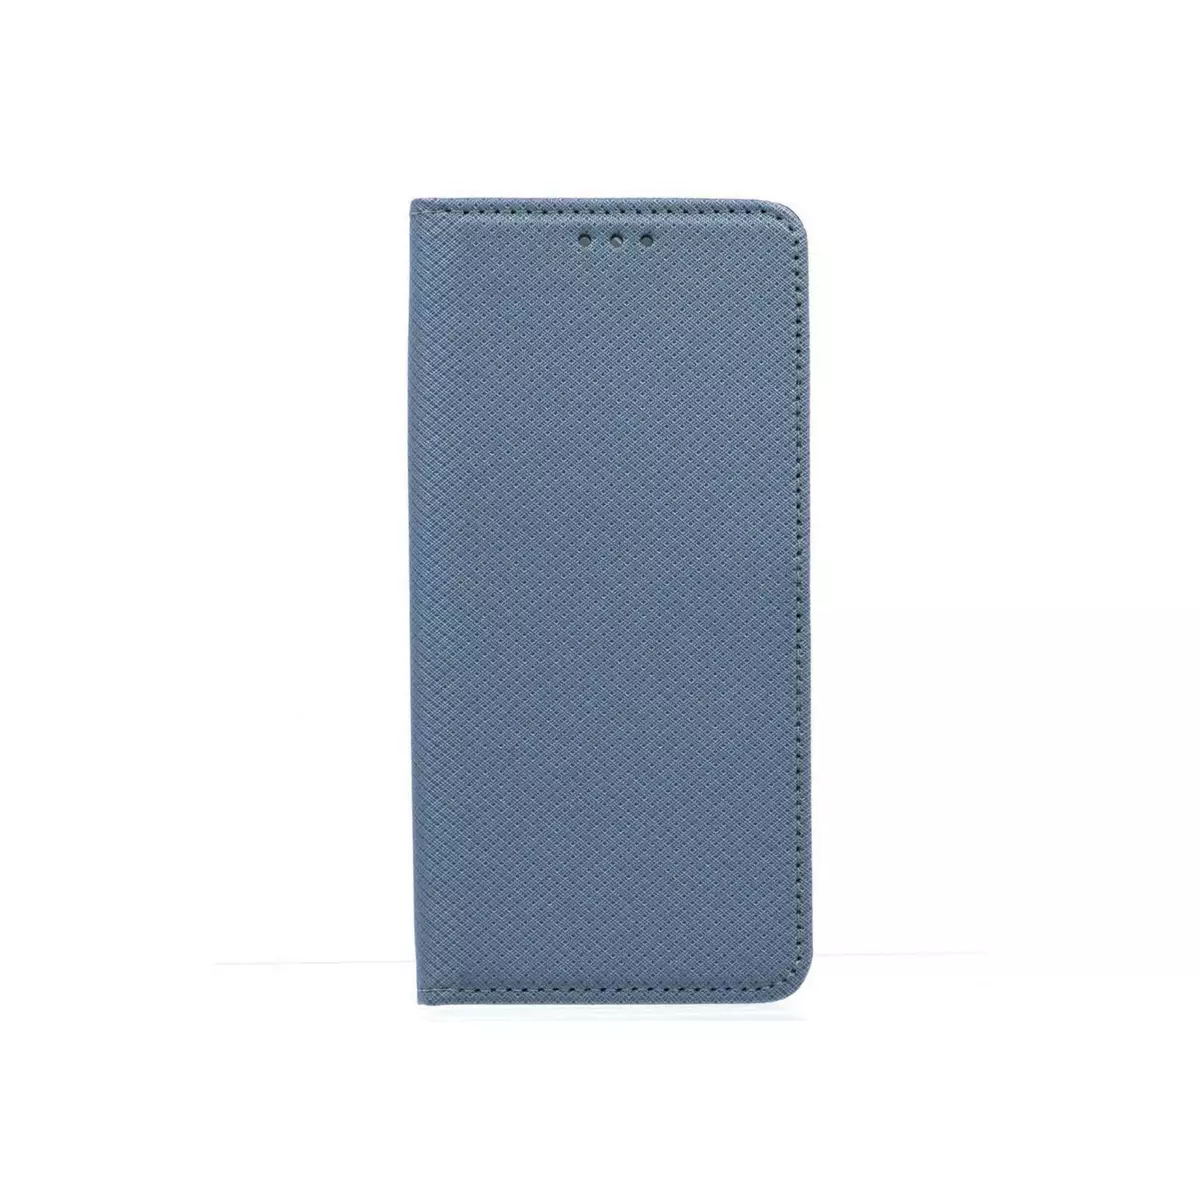 amahousse Housse grise Galaxy S7 Edge folio texturé rabat aimanté